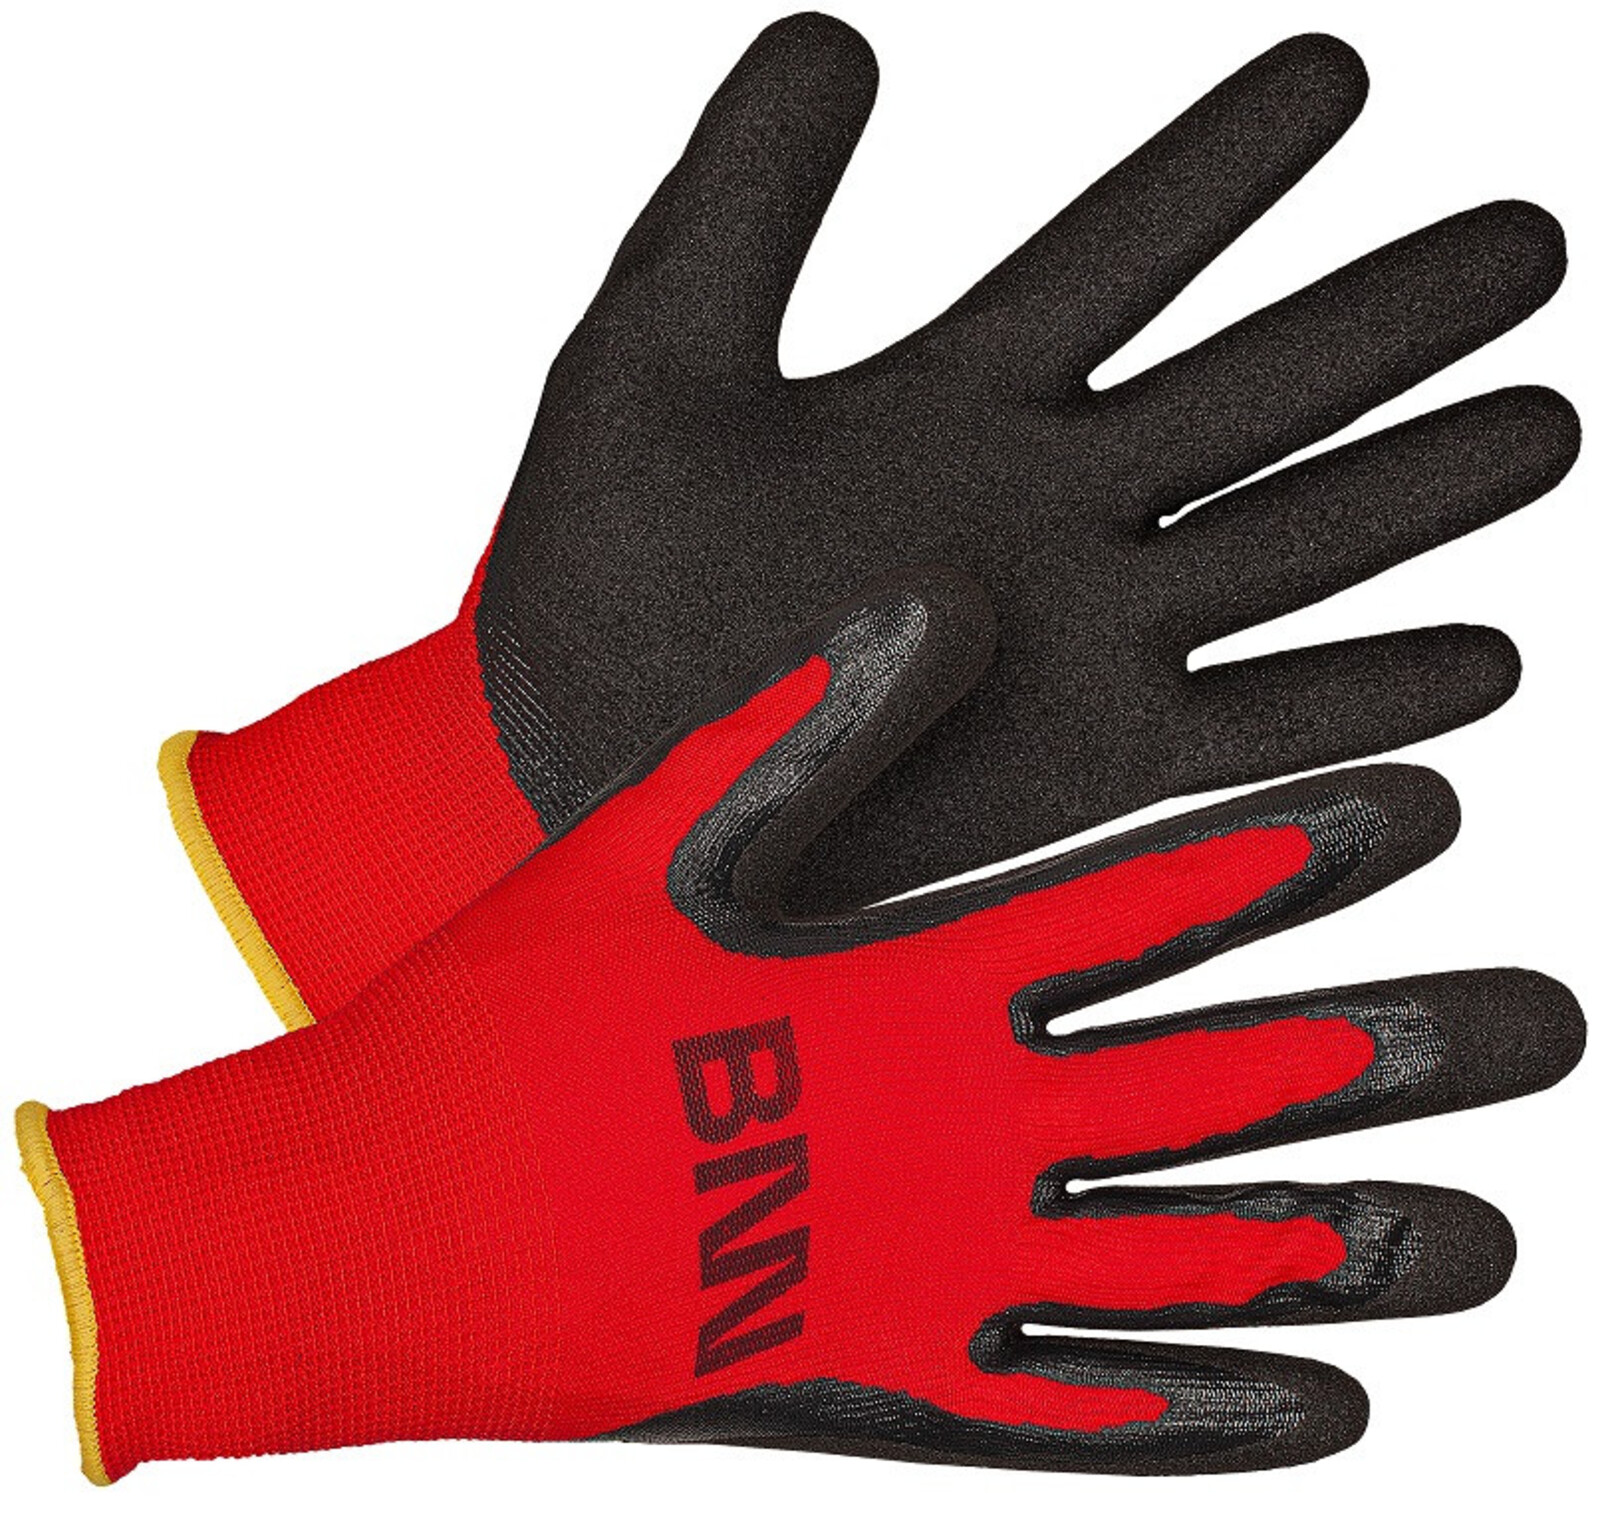 Nitrilové rukavice Bennon Manos - veľkosť: 8/M, farba: čierna/červená